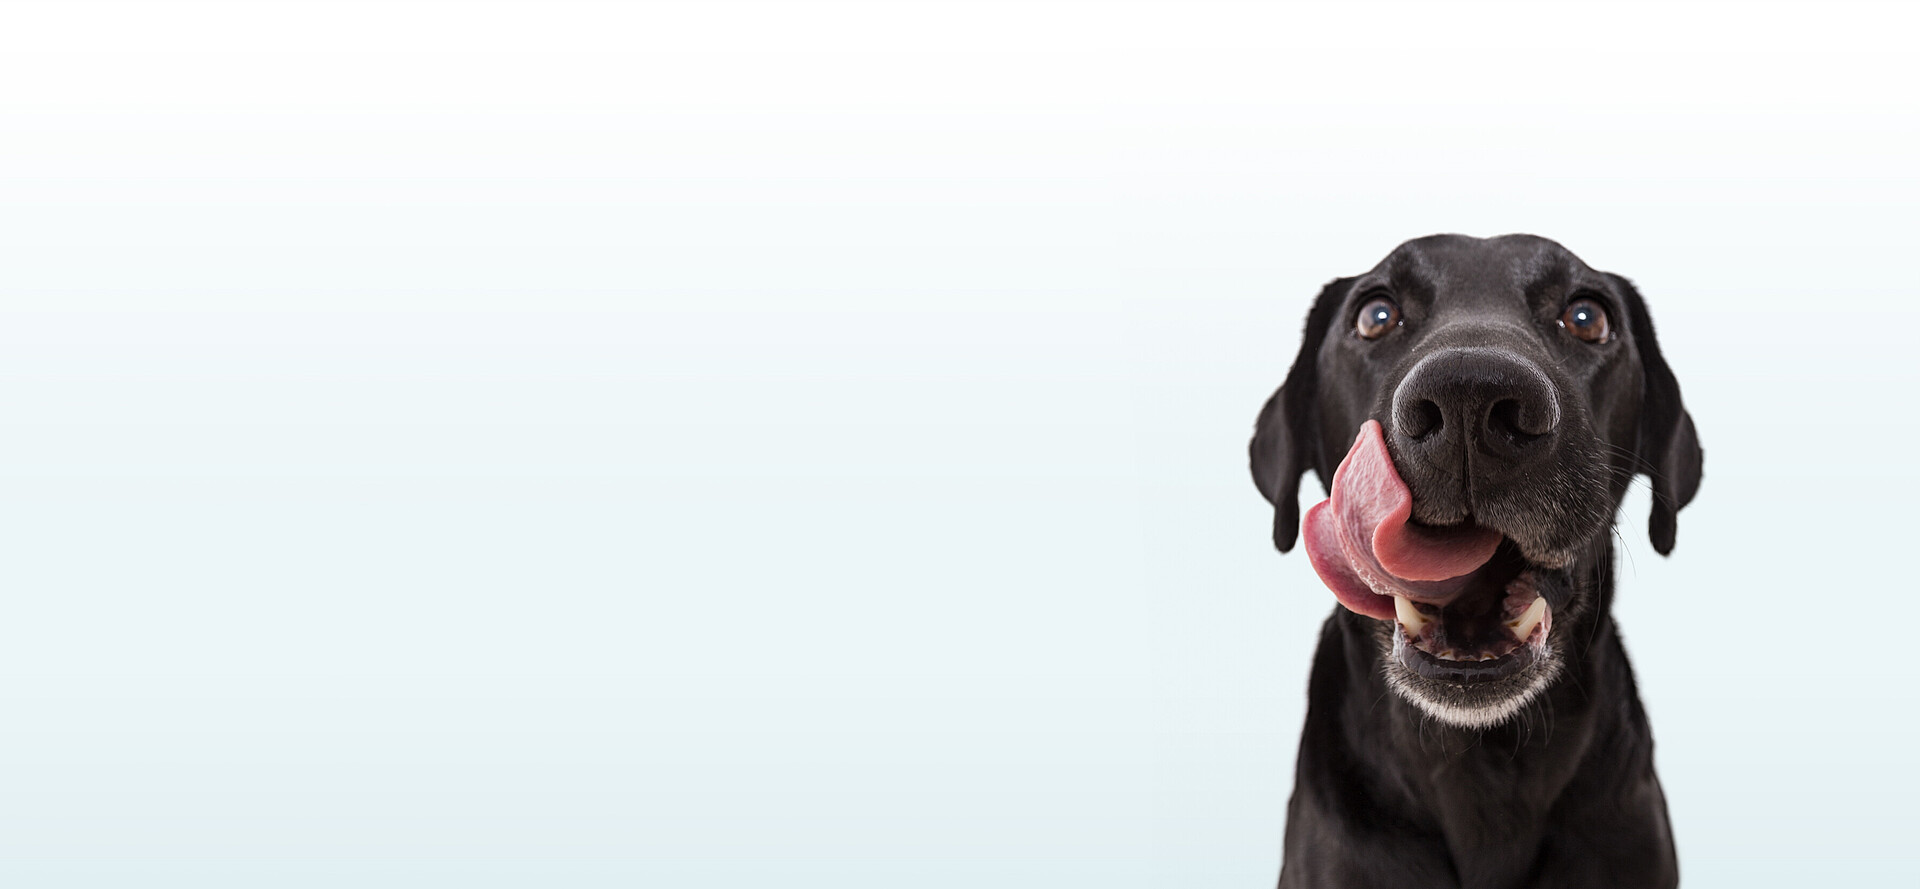 Hungriger Hund mit ausgestreckter Zunge